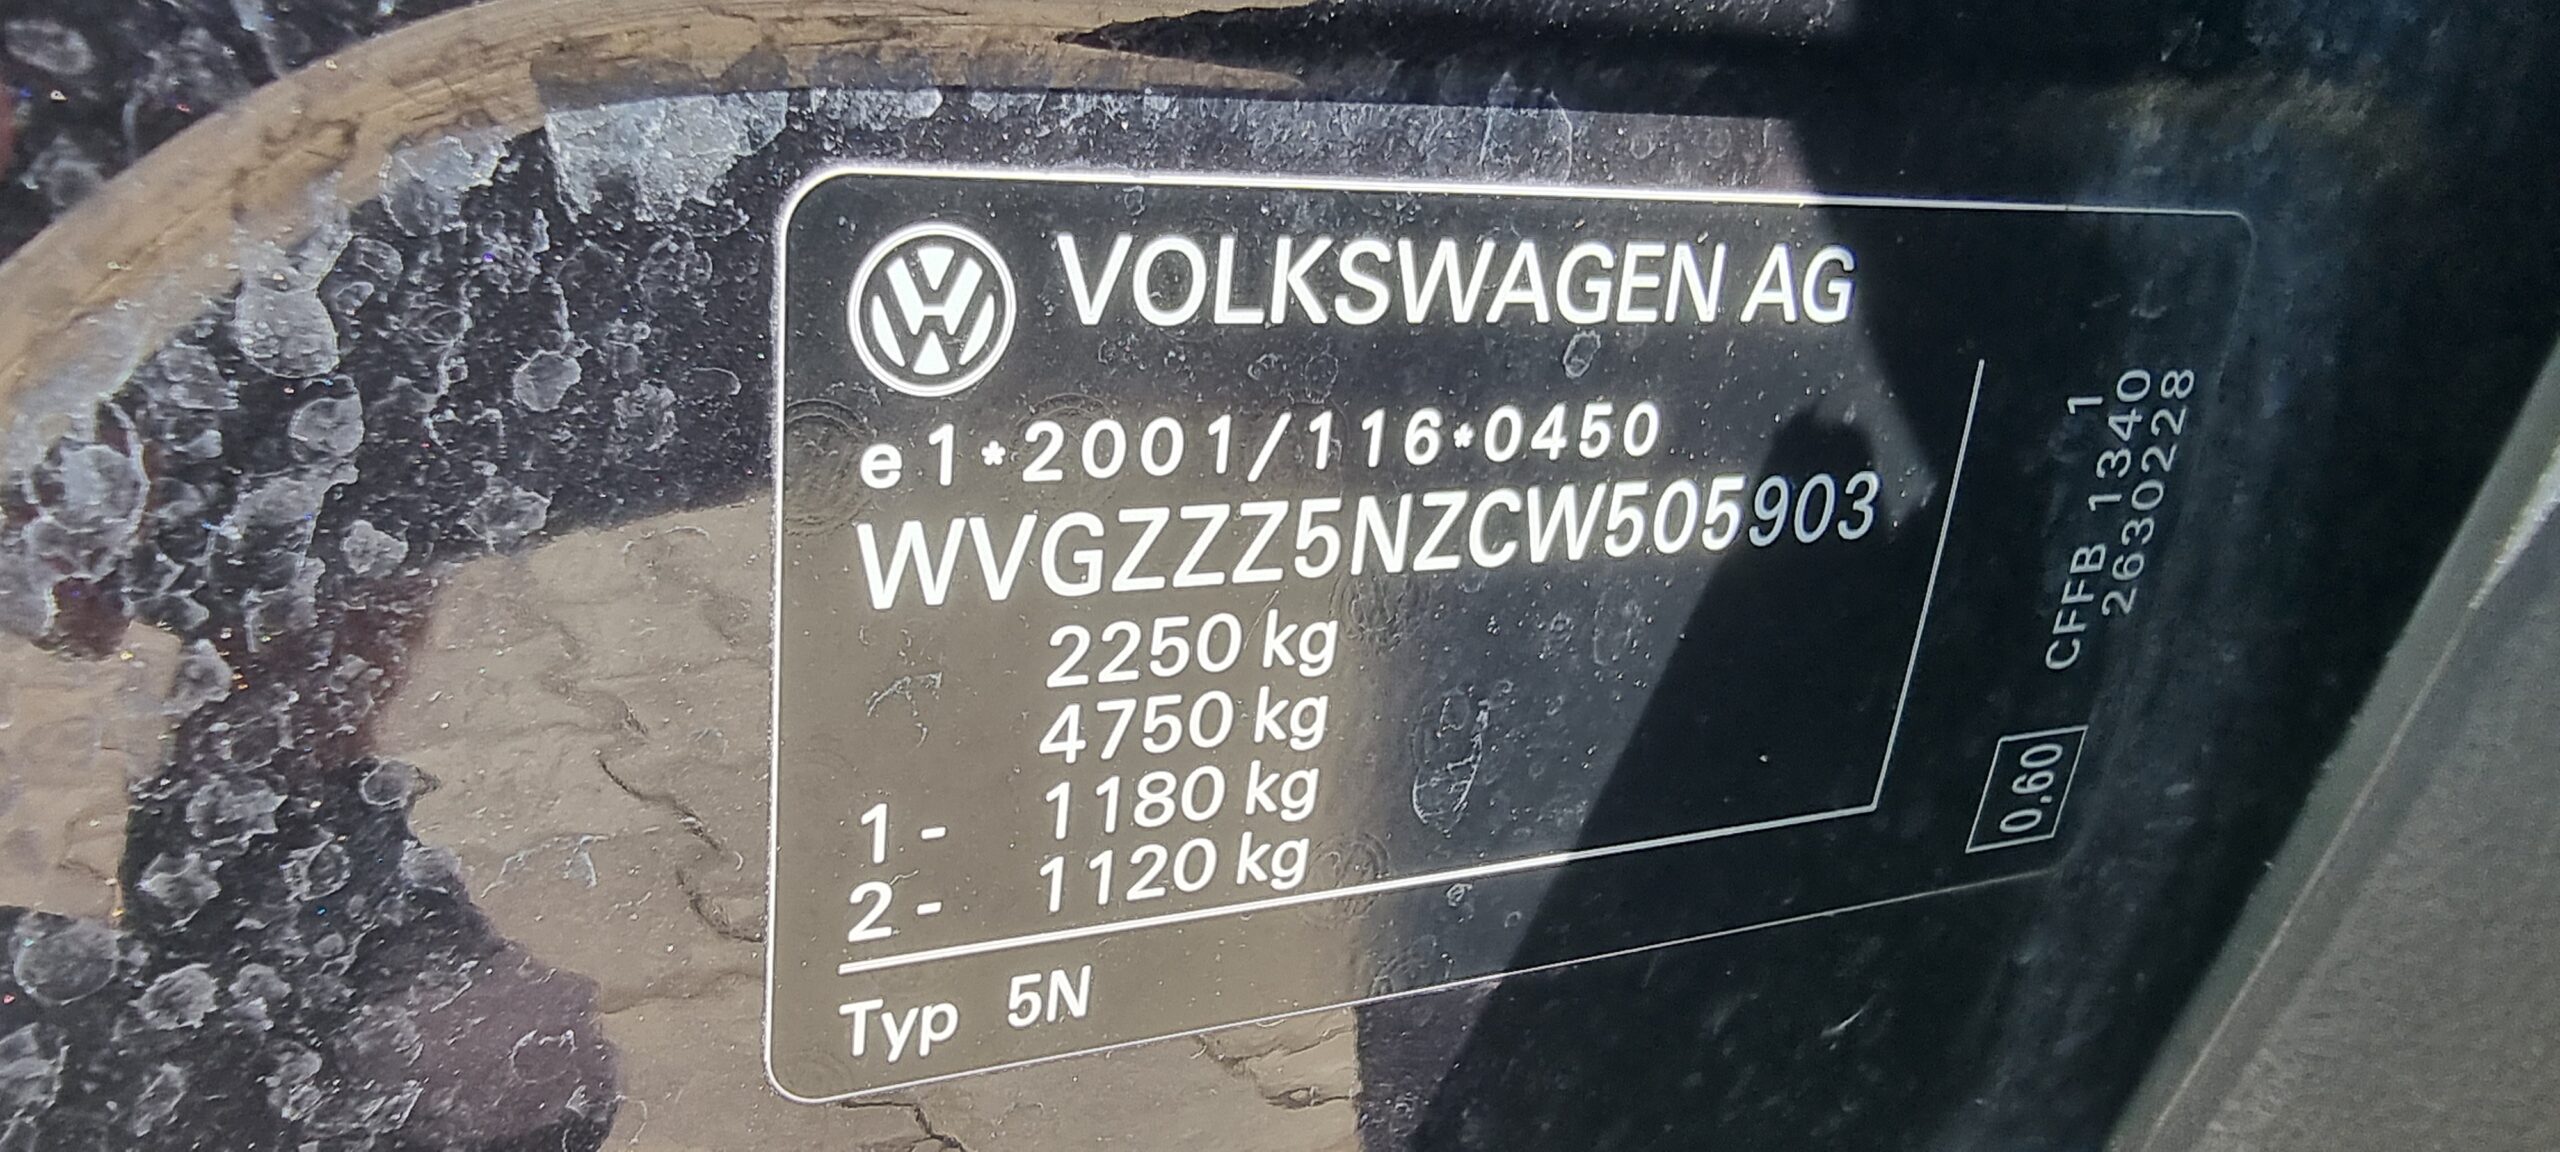 VW TIGUAN 4 MOTION, 2.0 TDI, 140 CP, AN 2012